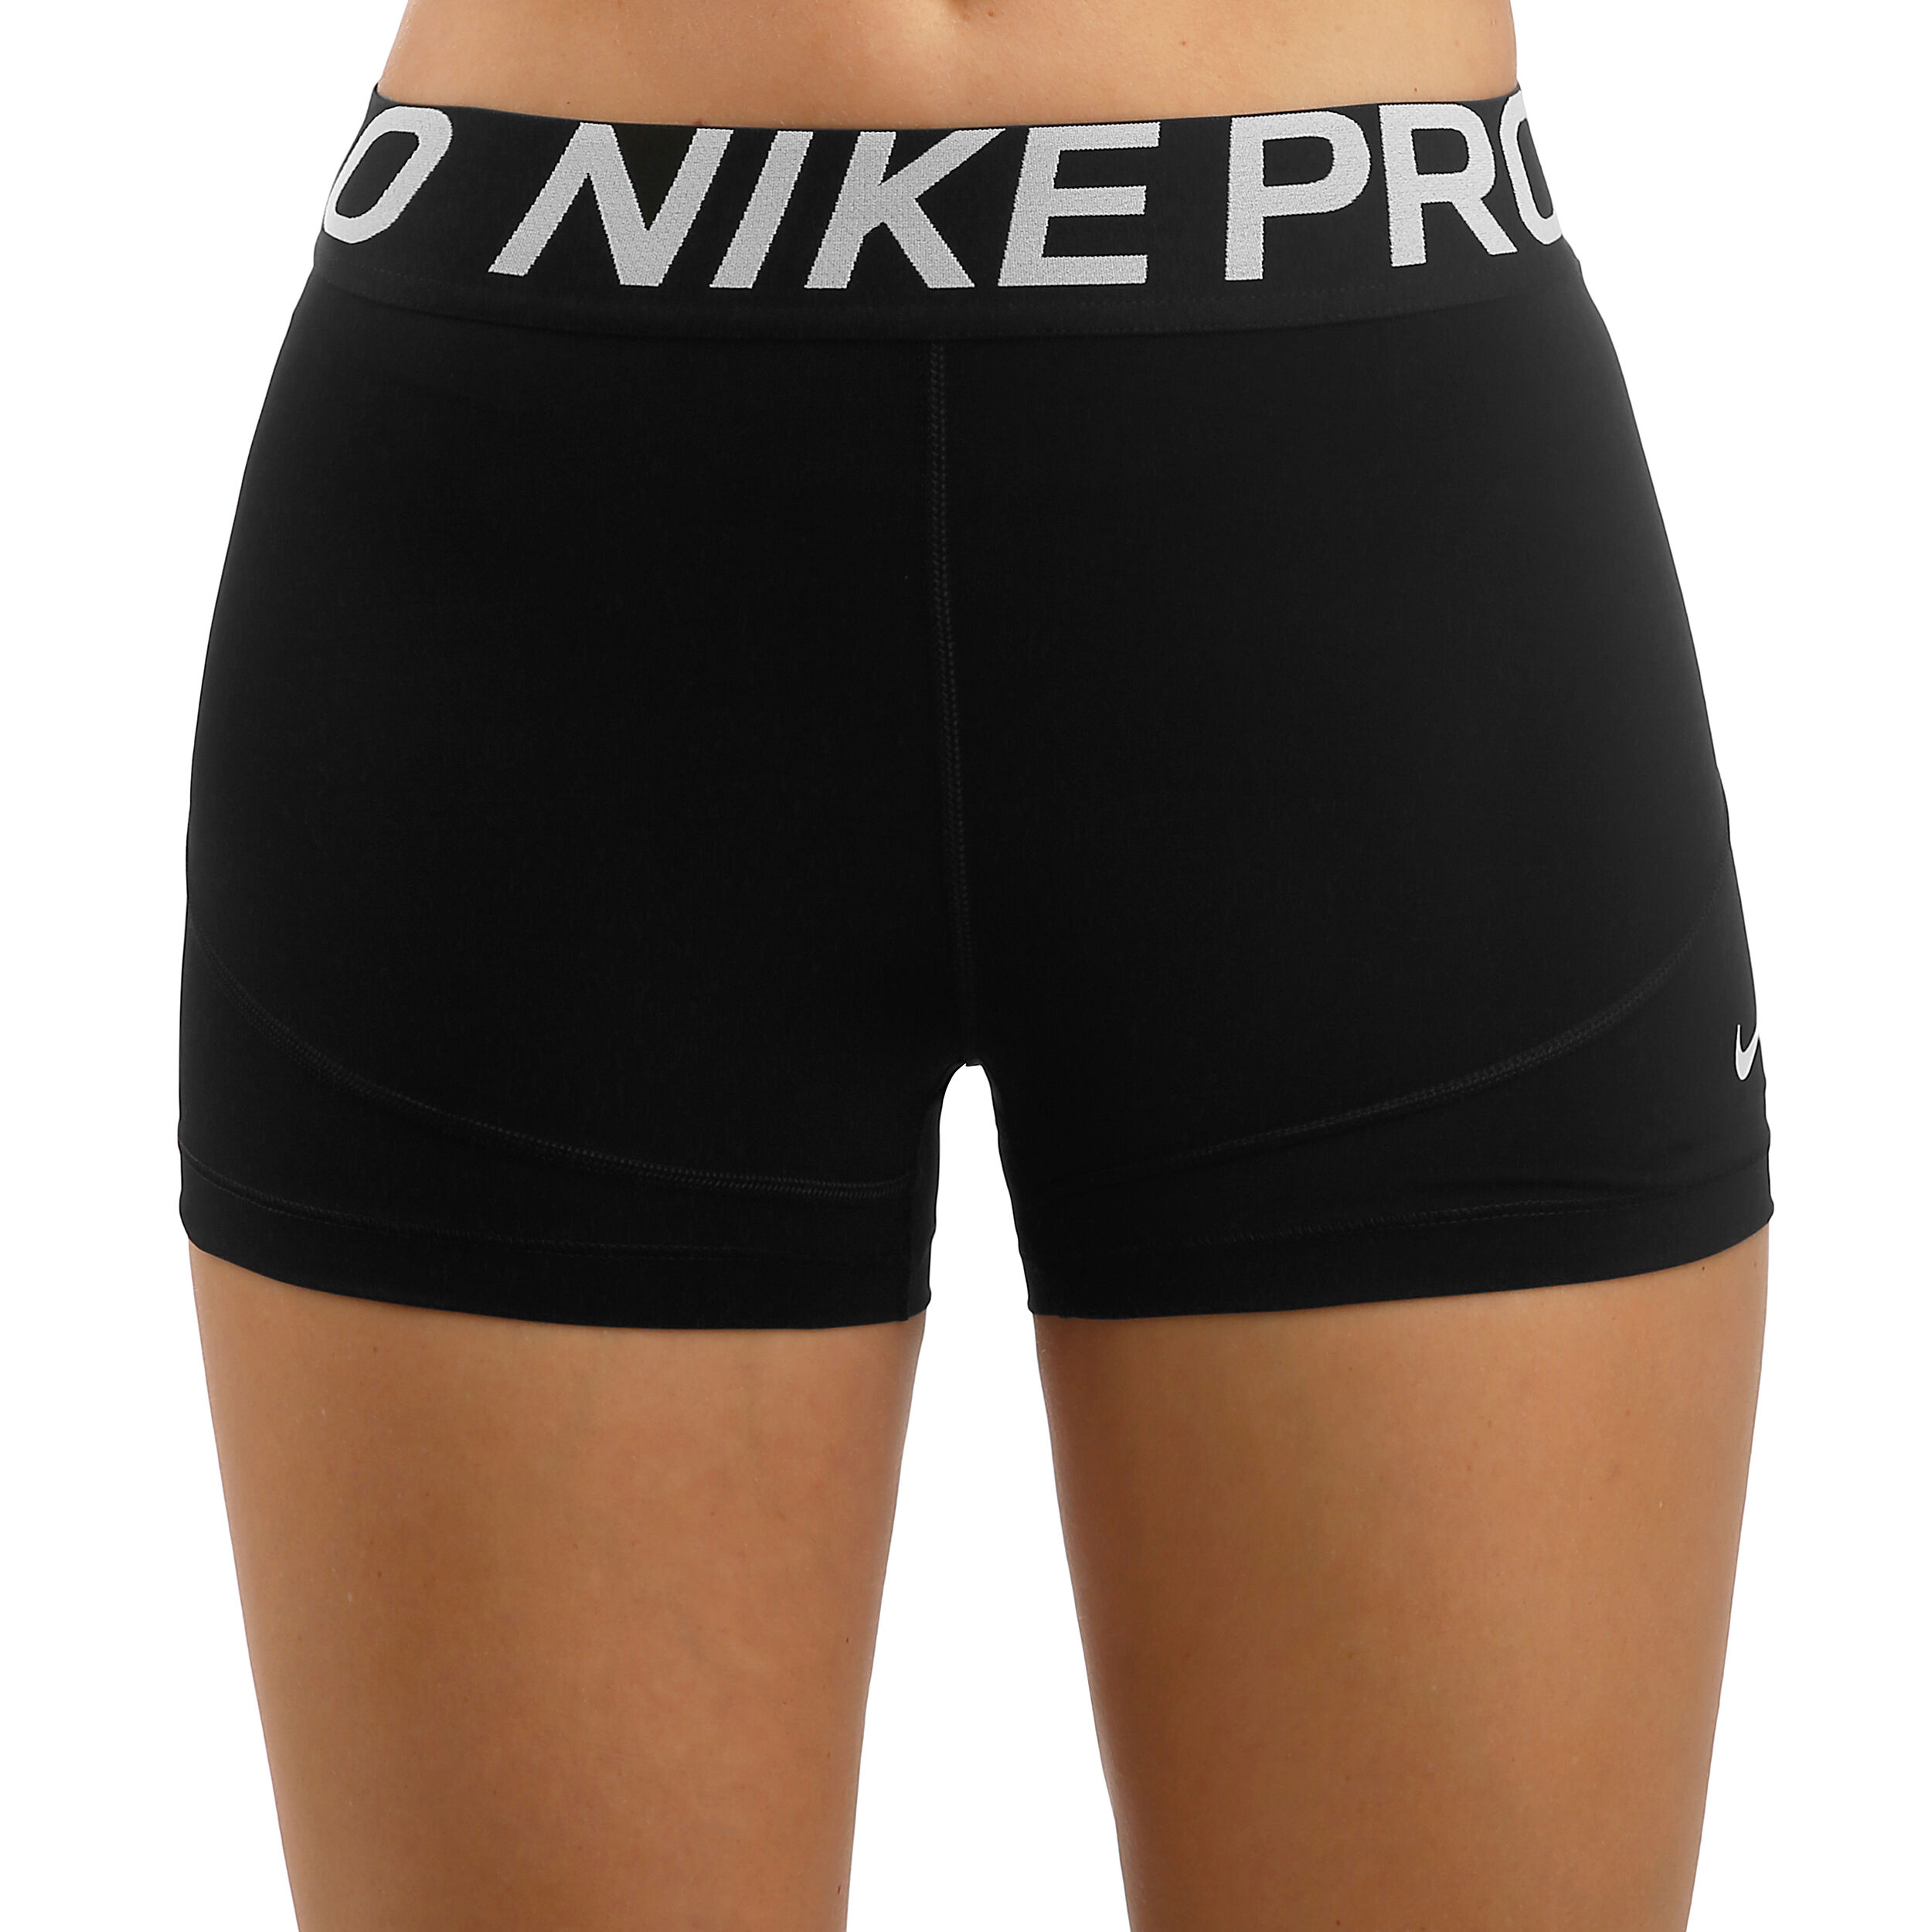 pro nike shorts women